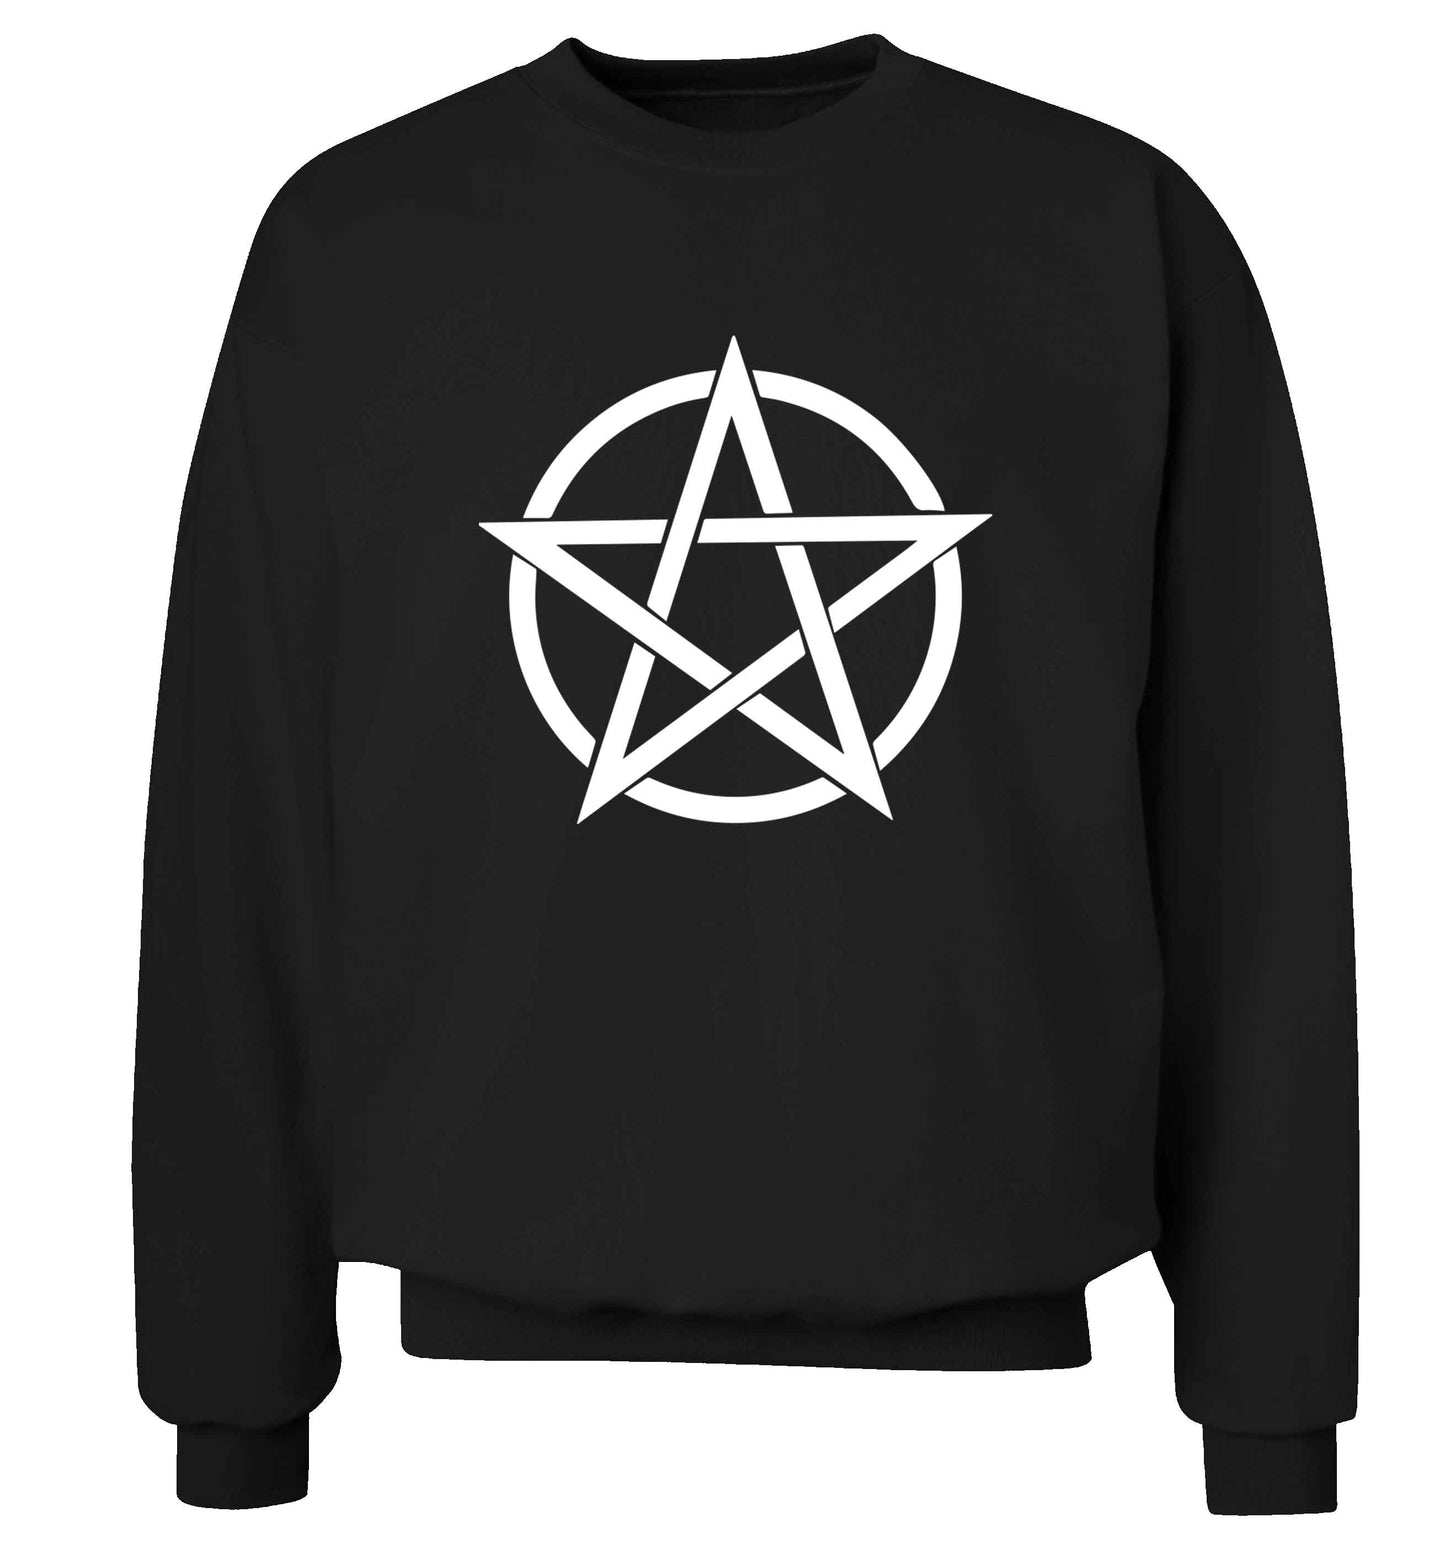 Pentagram symbol adult's unisex black sweater 2XL